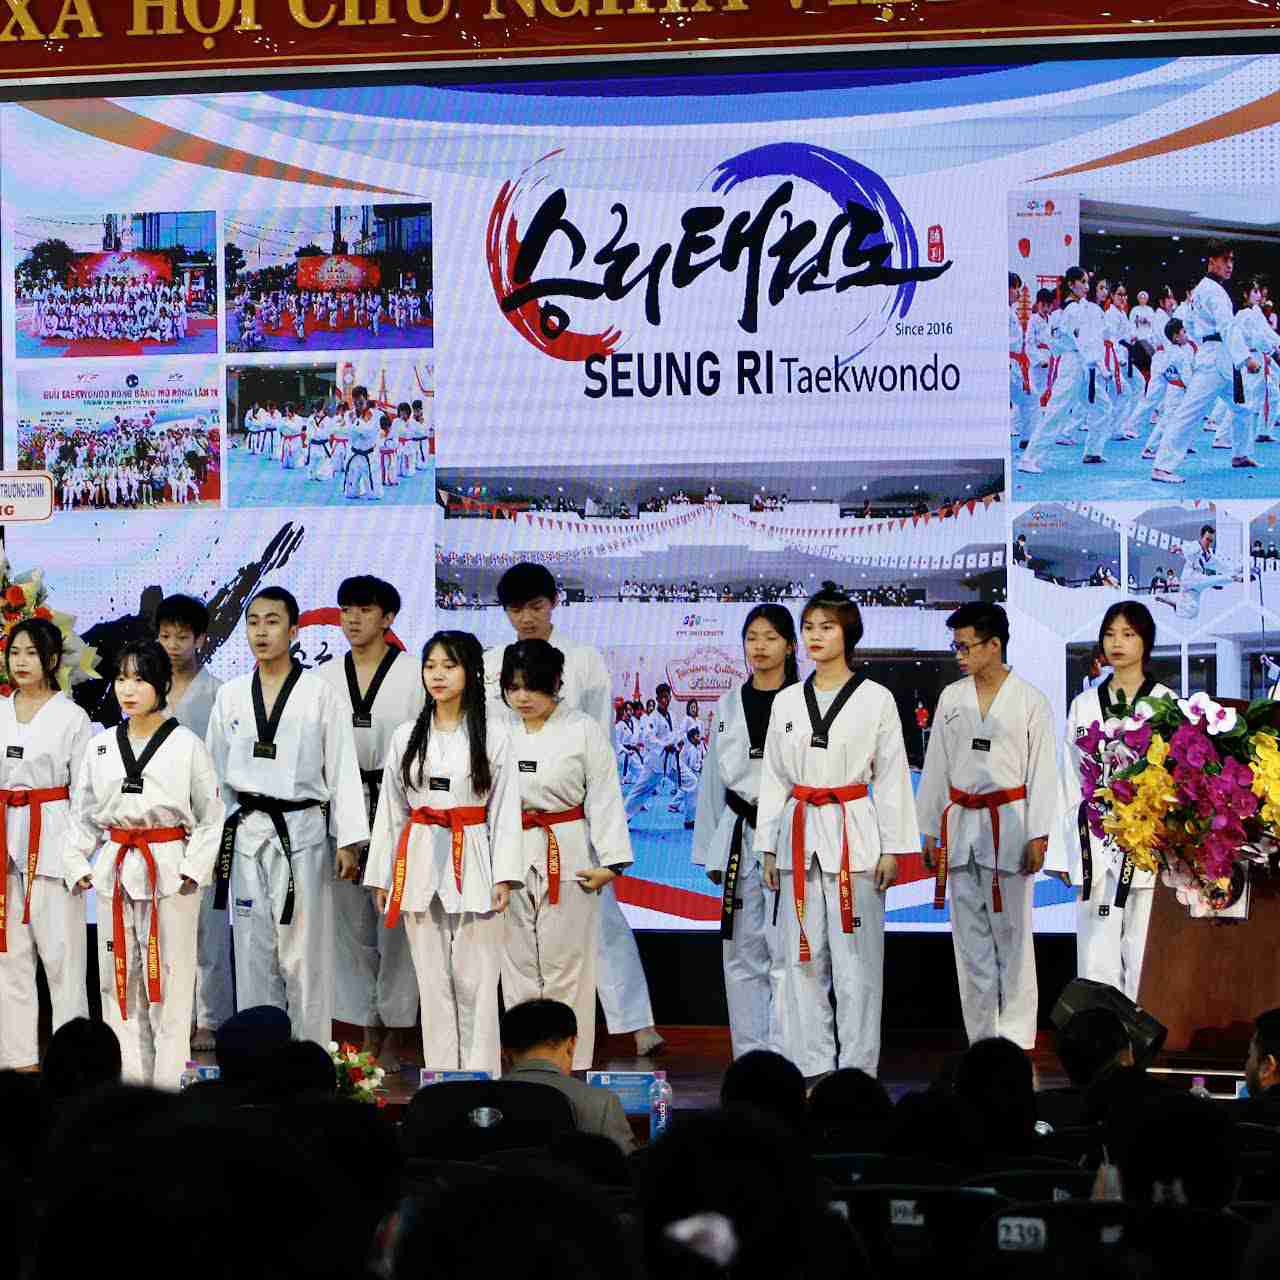 địa điểm học võ tại Đà Nẵng Clb Taekwondo Seung Ri